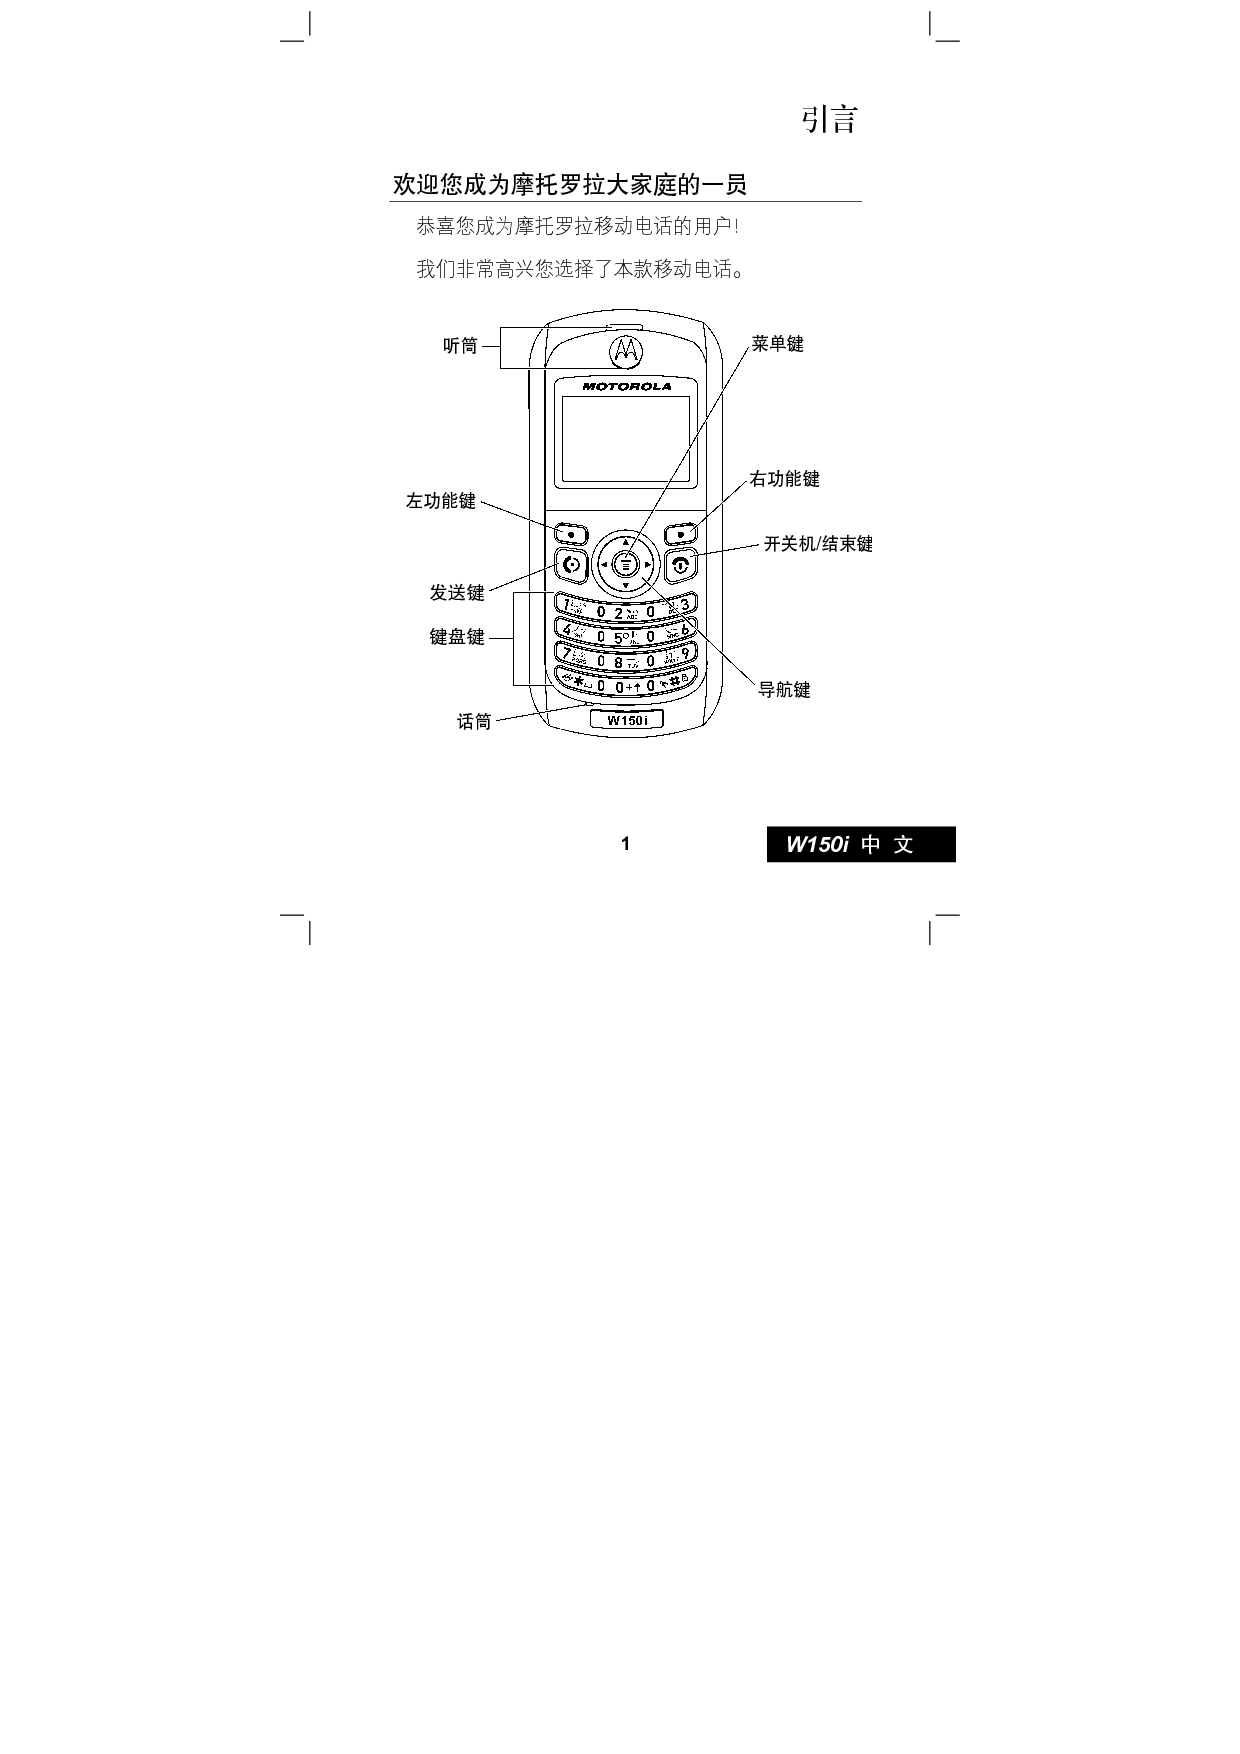 摩托罗拉 Motorola W150I 使用手册 第1页